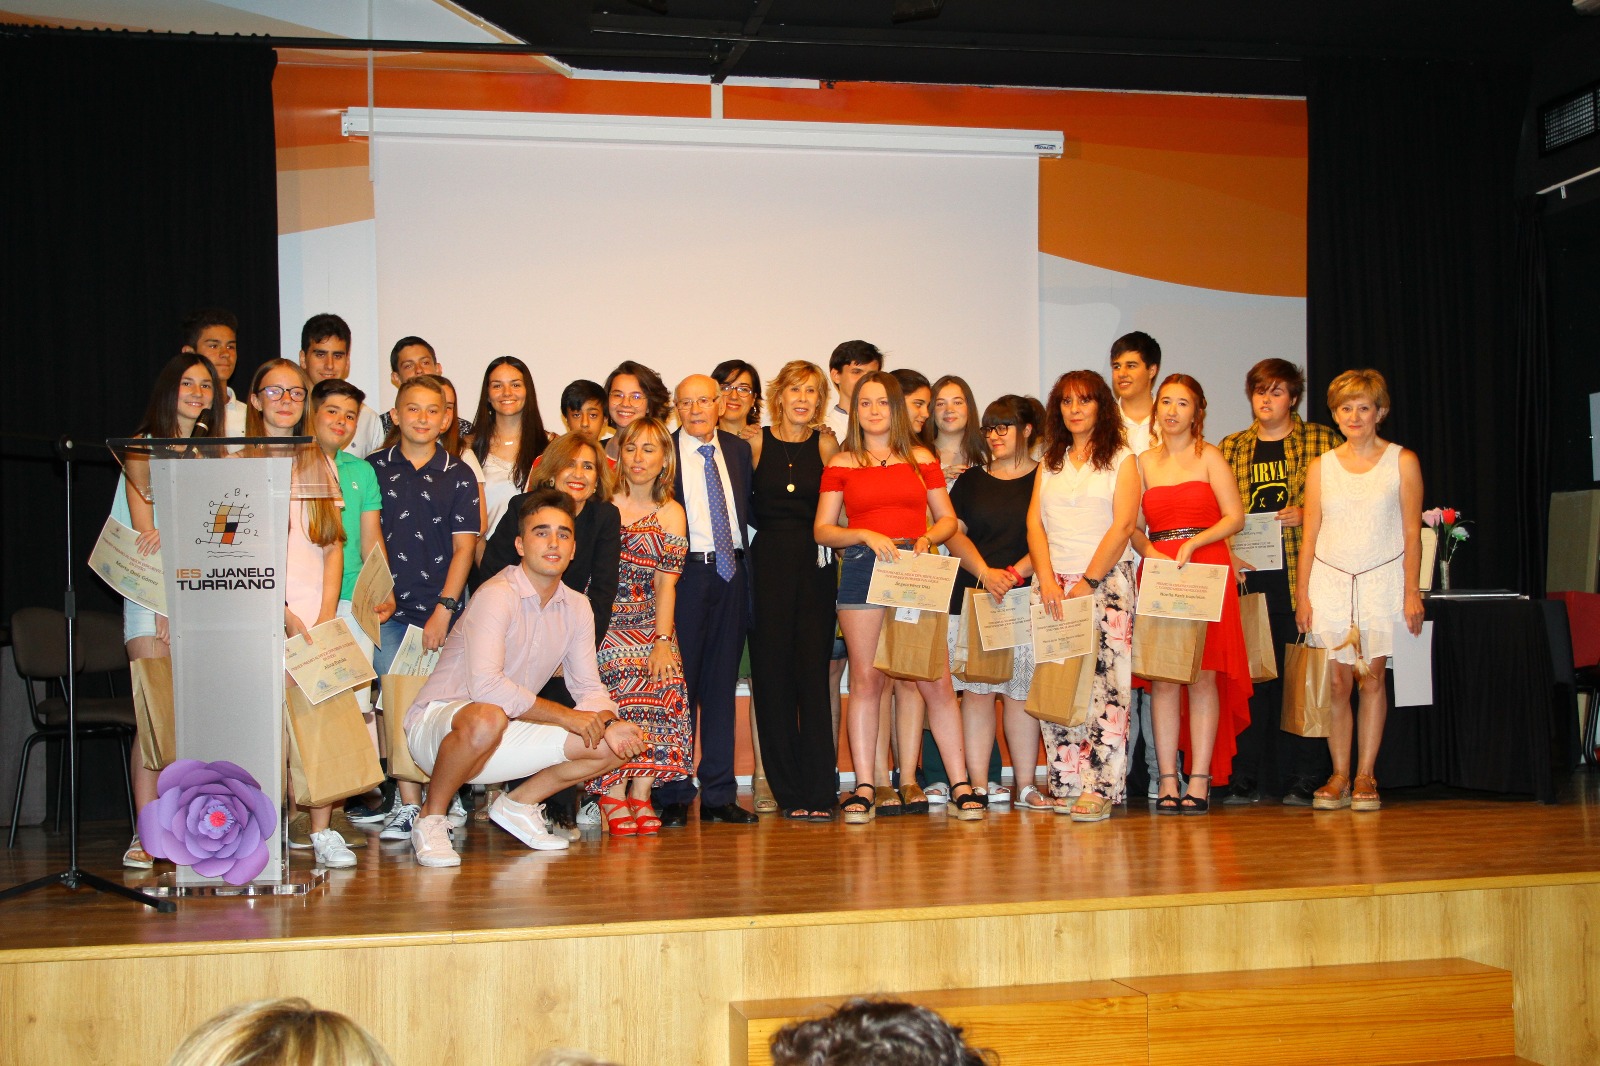 Juanelo Turriano Secondary School. Awards ceremony